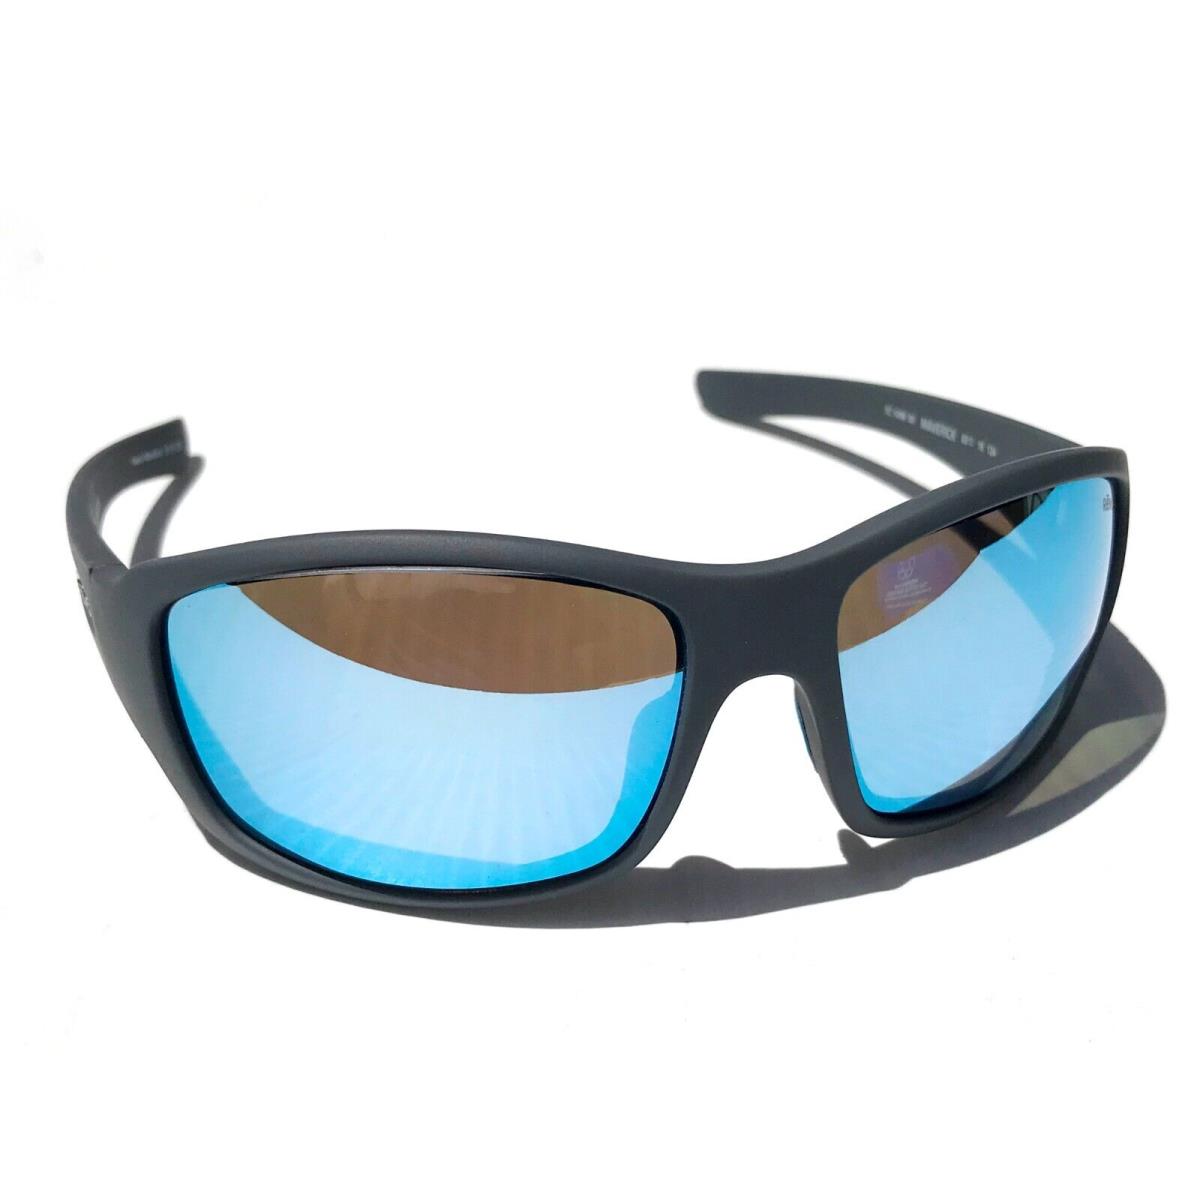 Revo sunglasses MAVERICK - Matte Grey Frame, Blue Lens